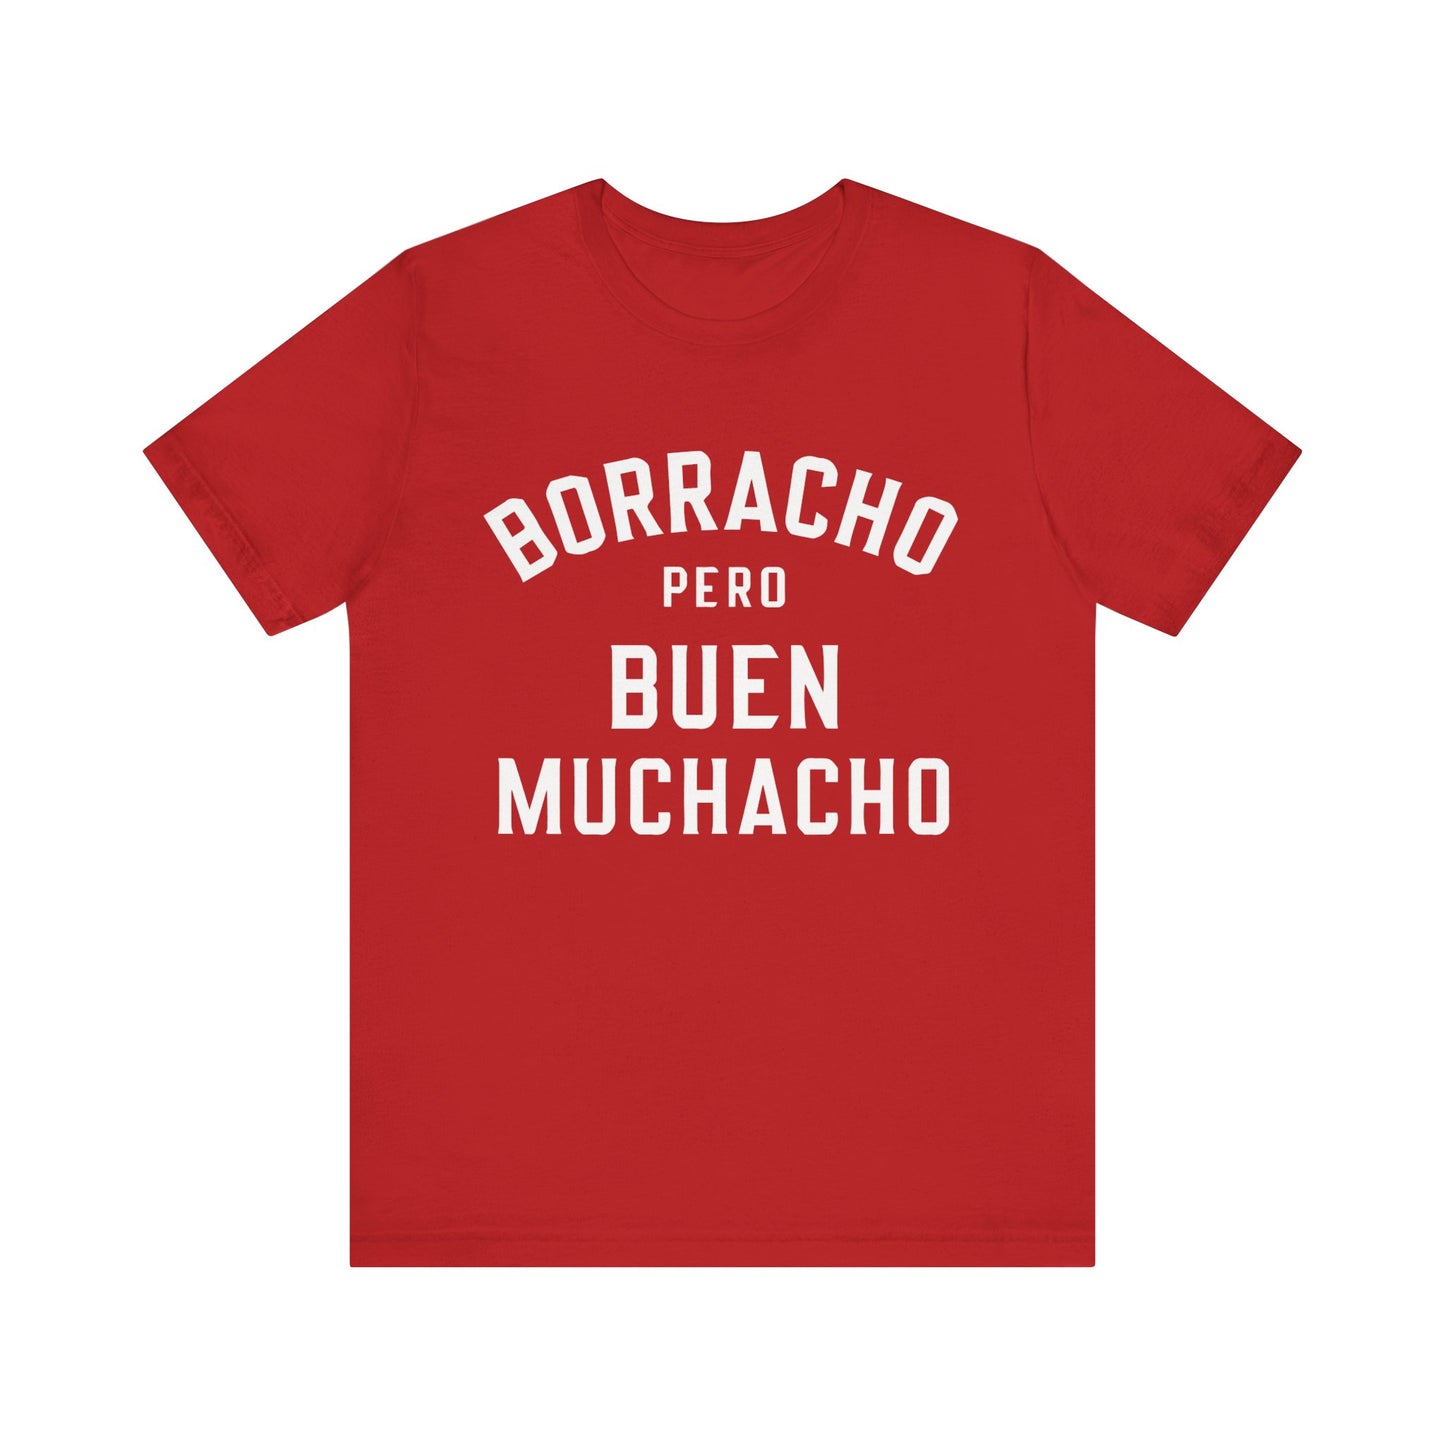 Borracho Pero Buen Muchacho T-Shirt